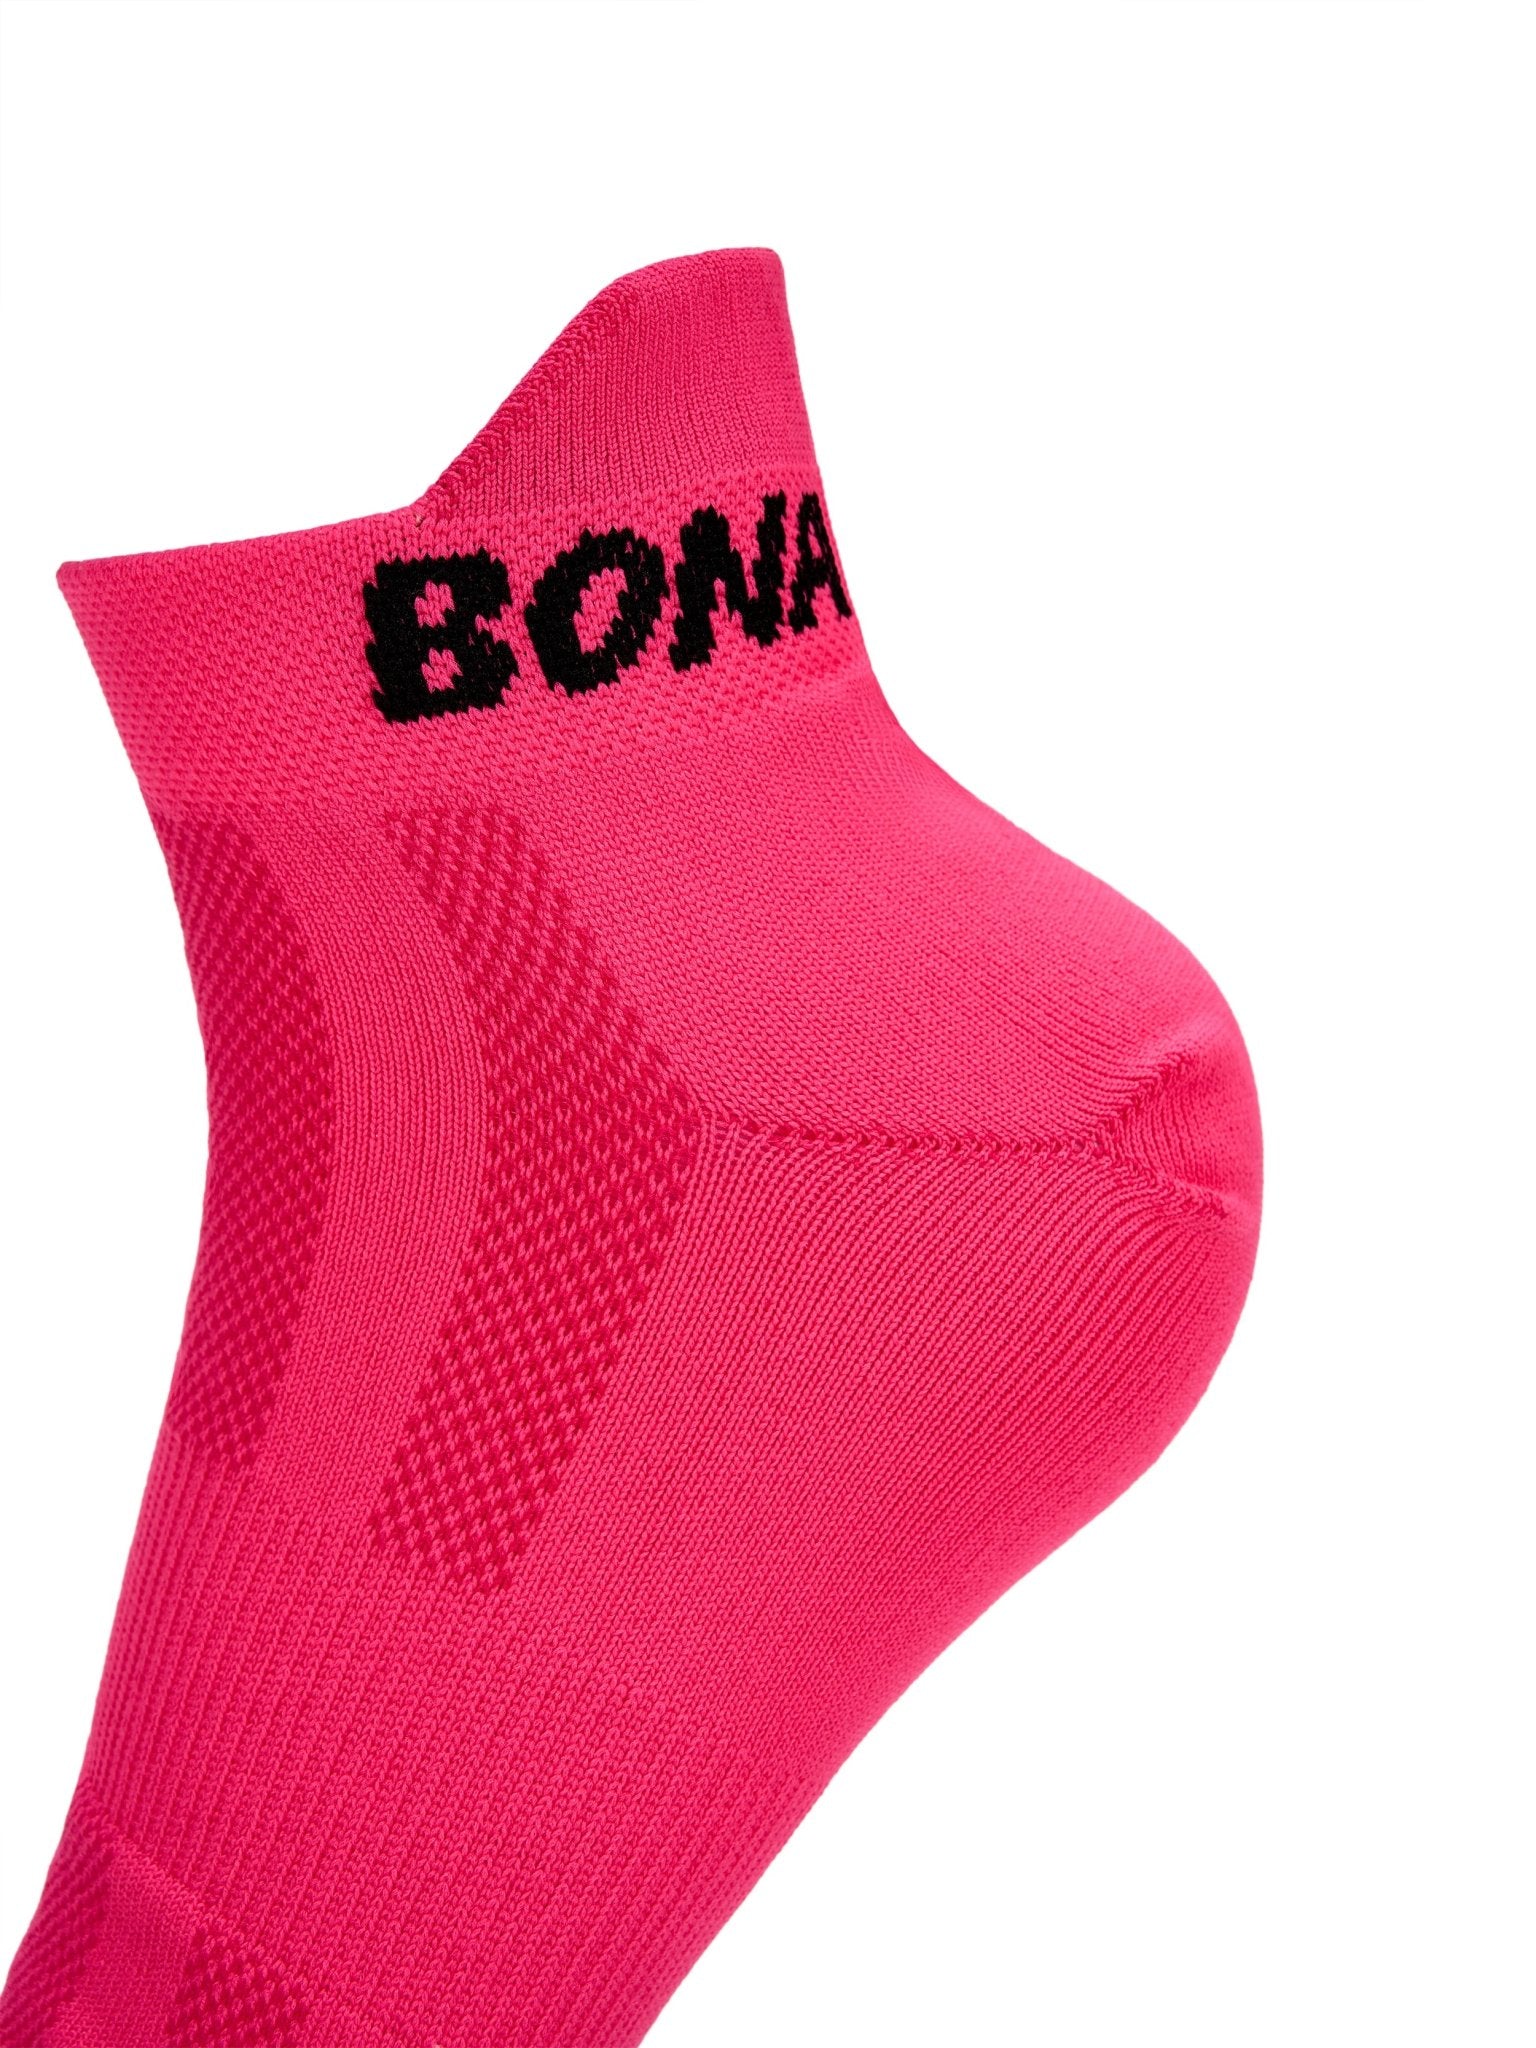 Socks Pink (3 pairs) - Bona Fide